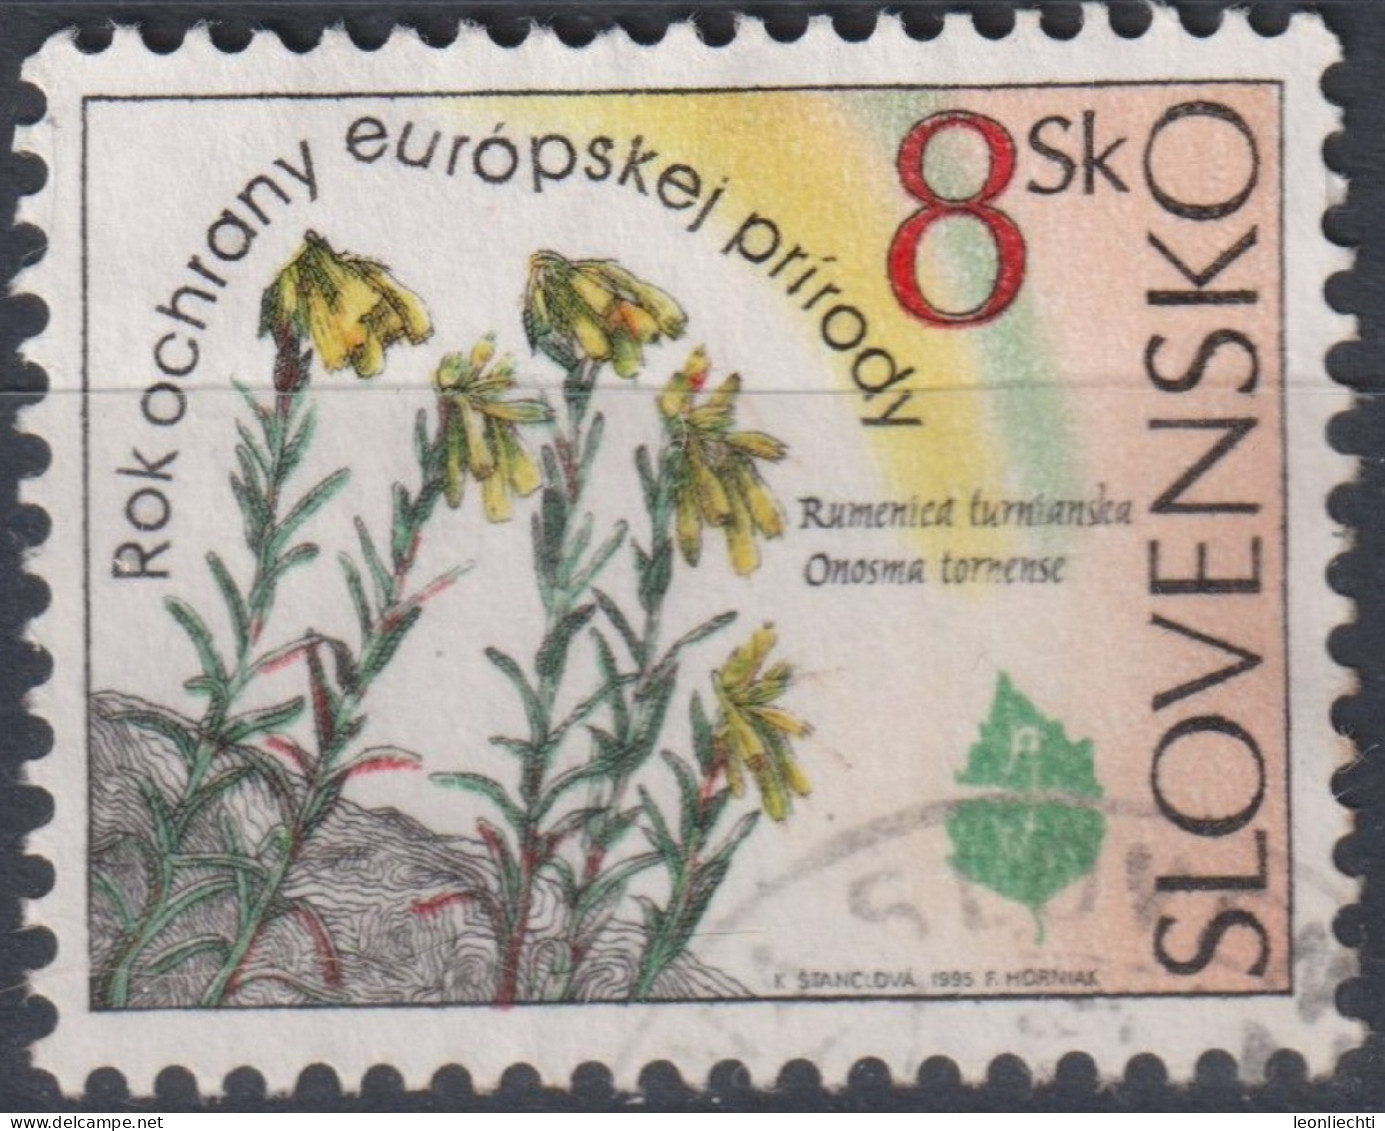 1995 Slowakische Republik ° Mi:SK 219, Sn:SK 207, Yt:SK 183, Onosma Tornense, Blumen, Flowers (1995) - Gebraucht